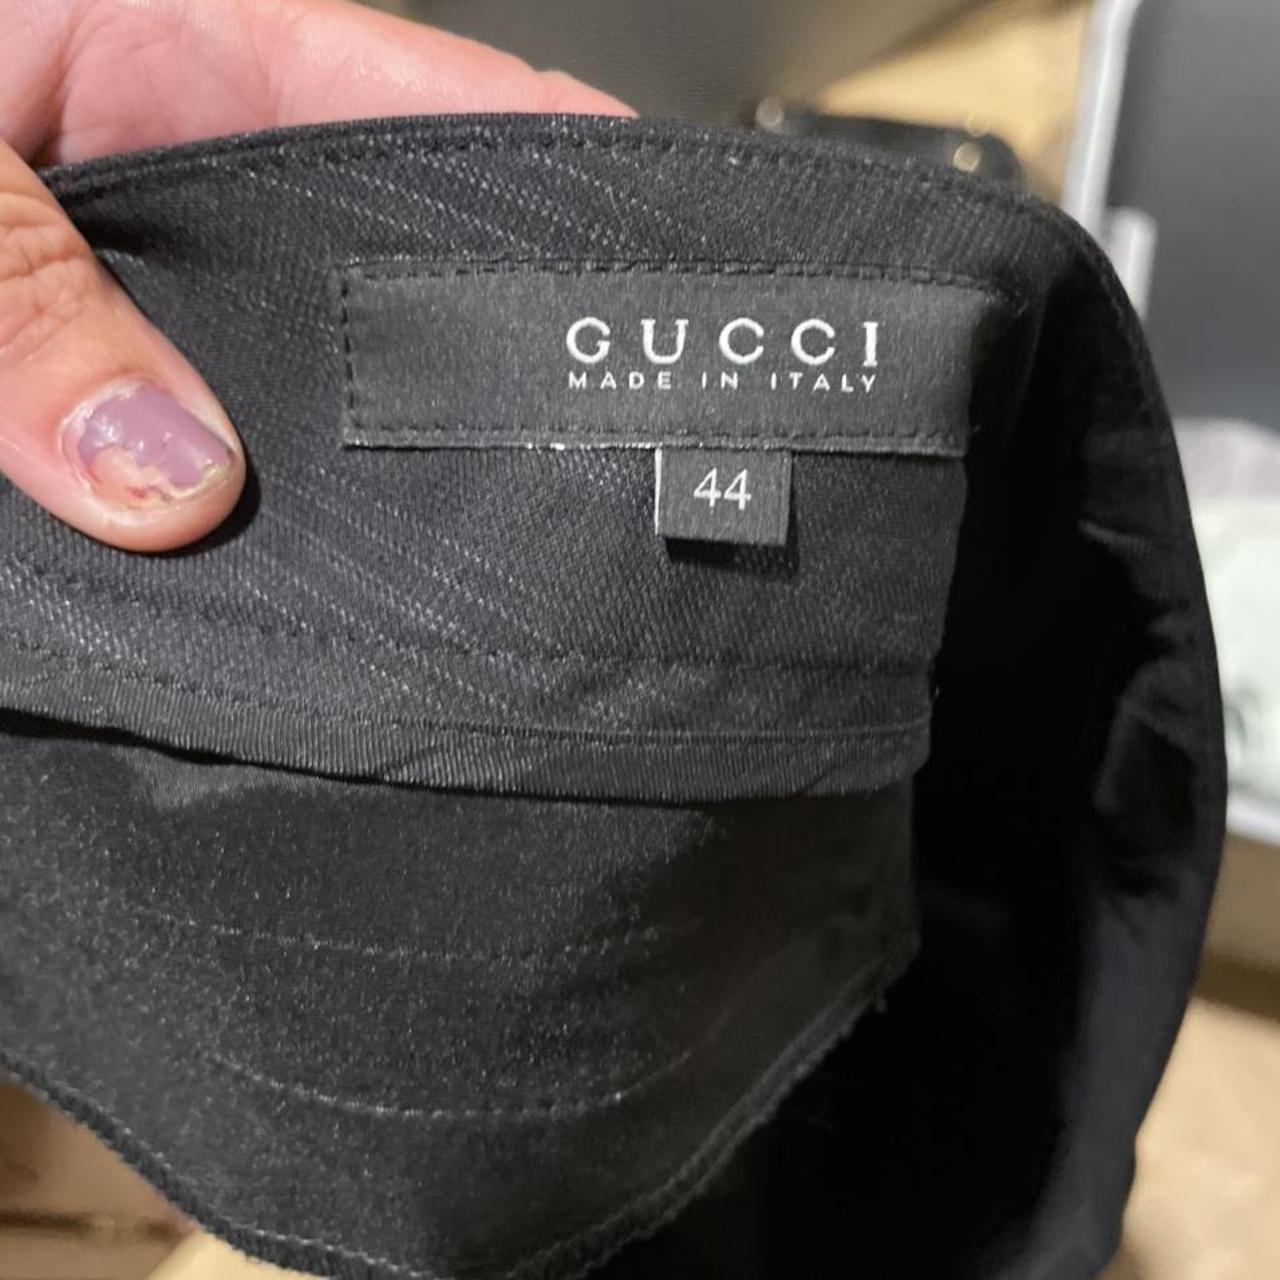 Gucci men’s slacks. Gently used. Size 44. - Depop